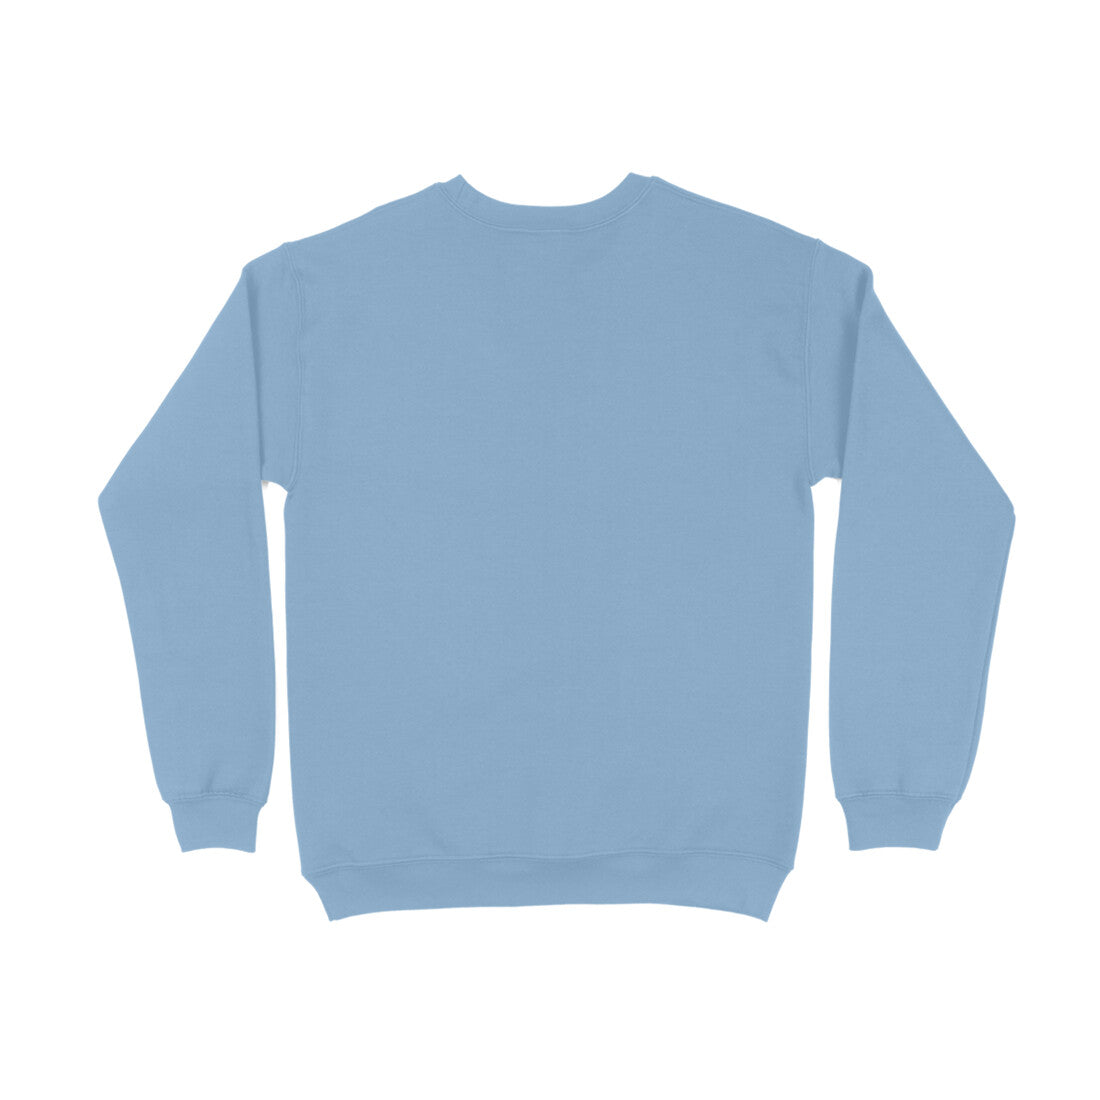 DT Raw Solid Unisex Sweatshirts